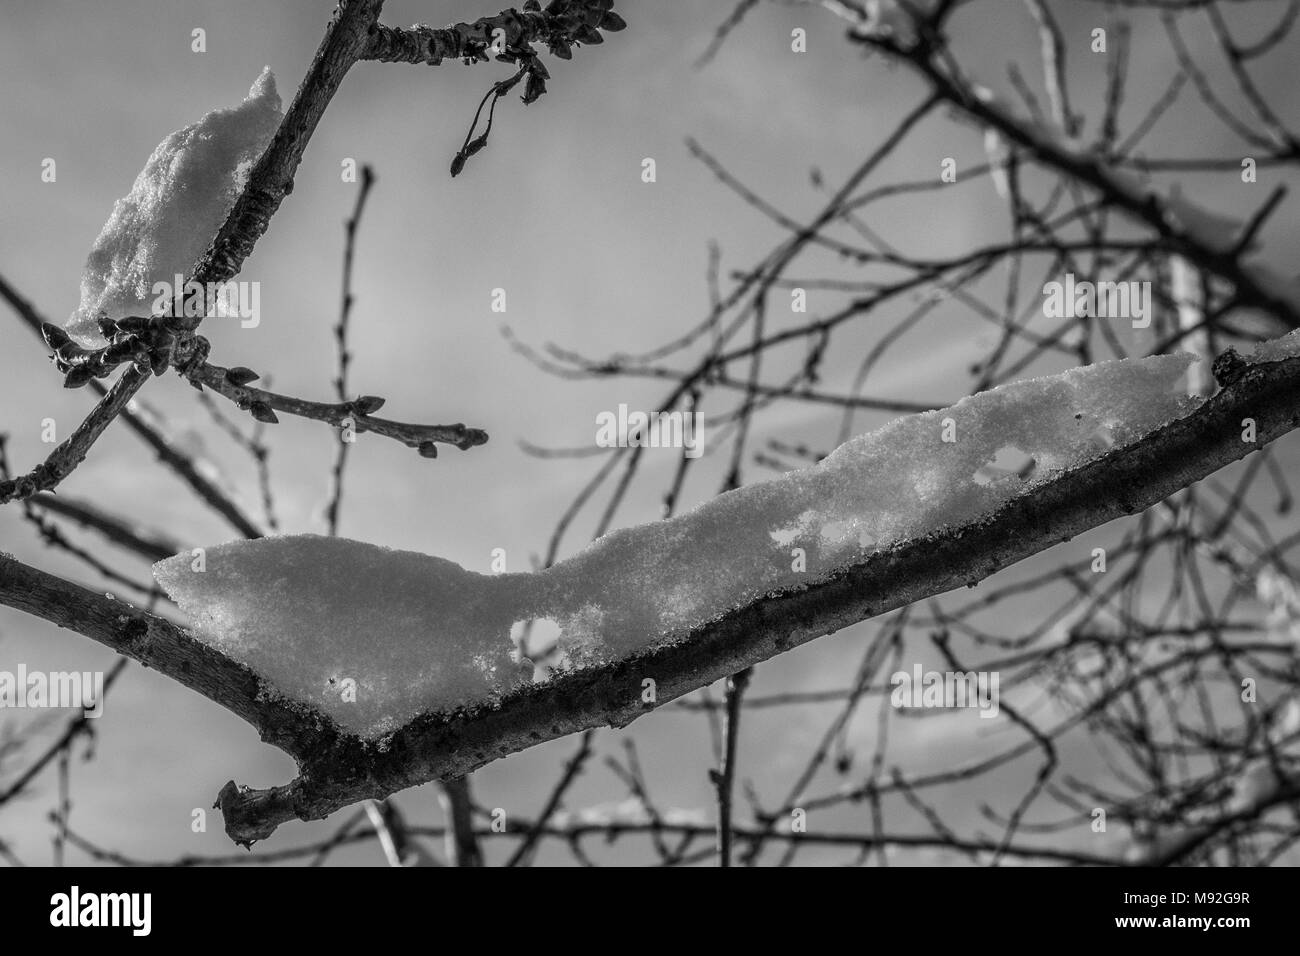 Les branches d'Arbres enneigés dans un jardin, noir et blanc. Branches de neige blanc, ciel clair en arrière-plan, le thème de l'hiver. Banque D'Images